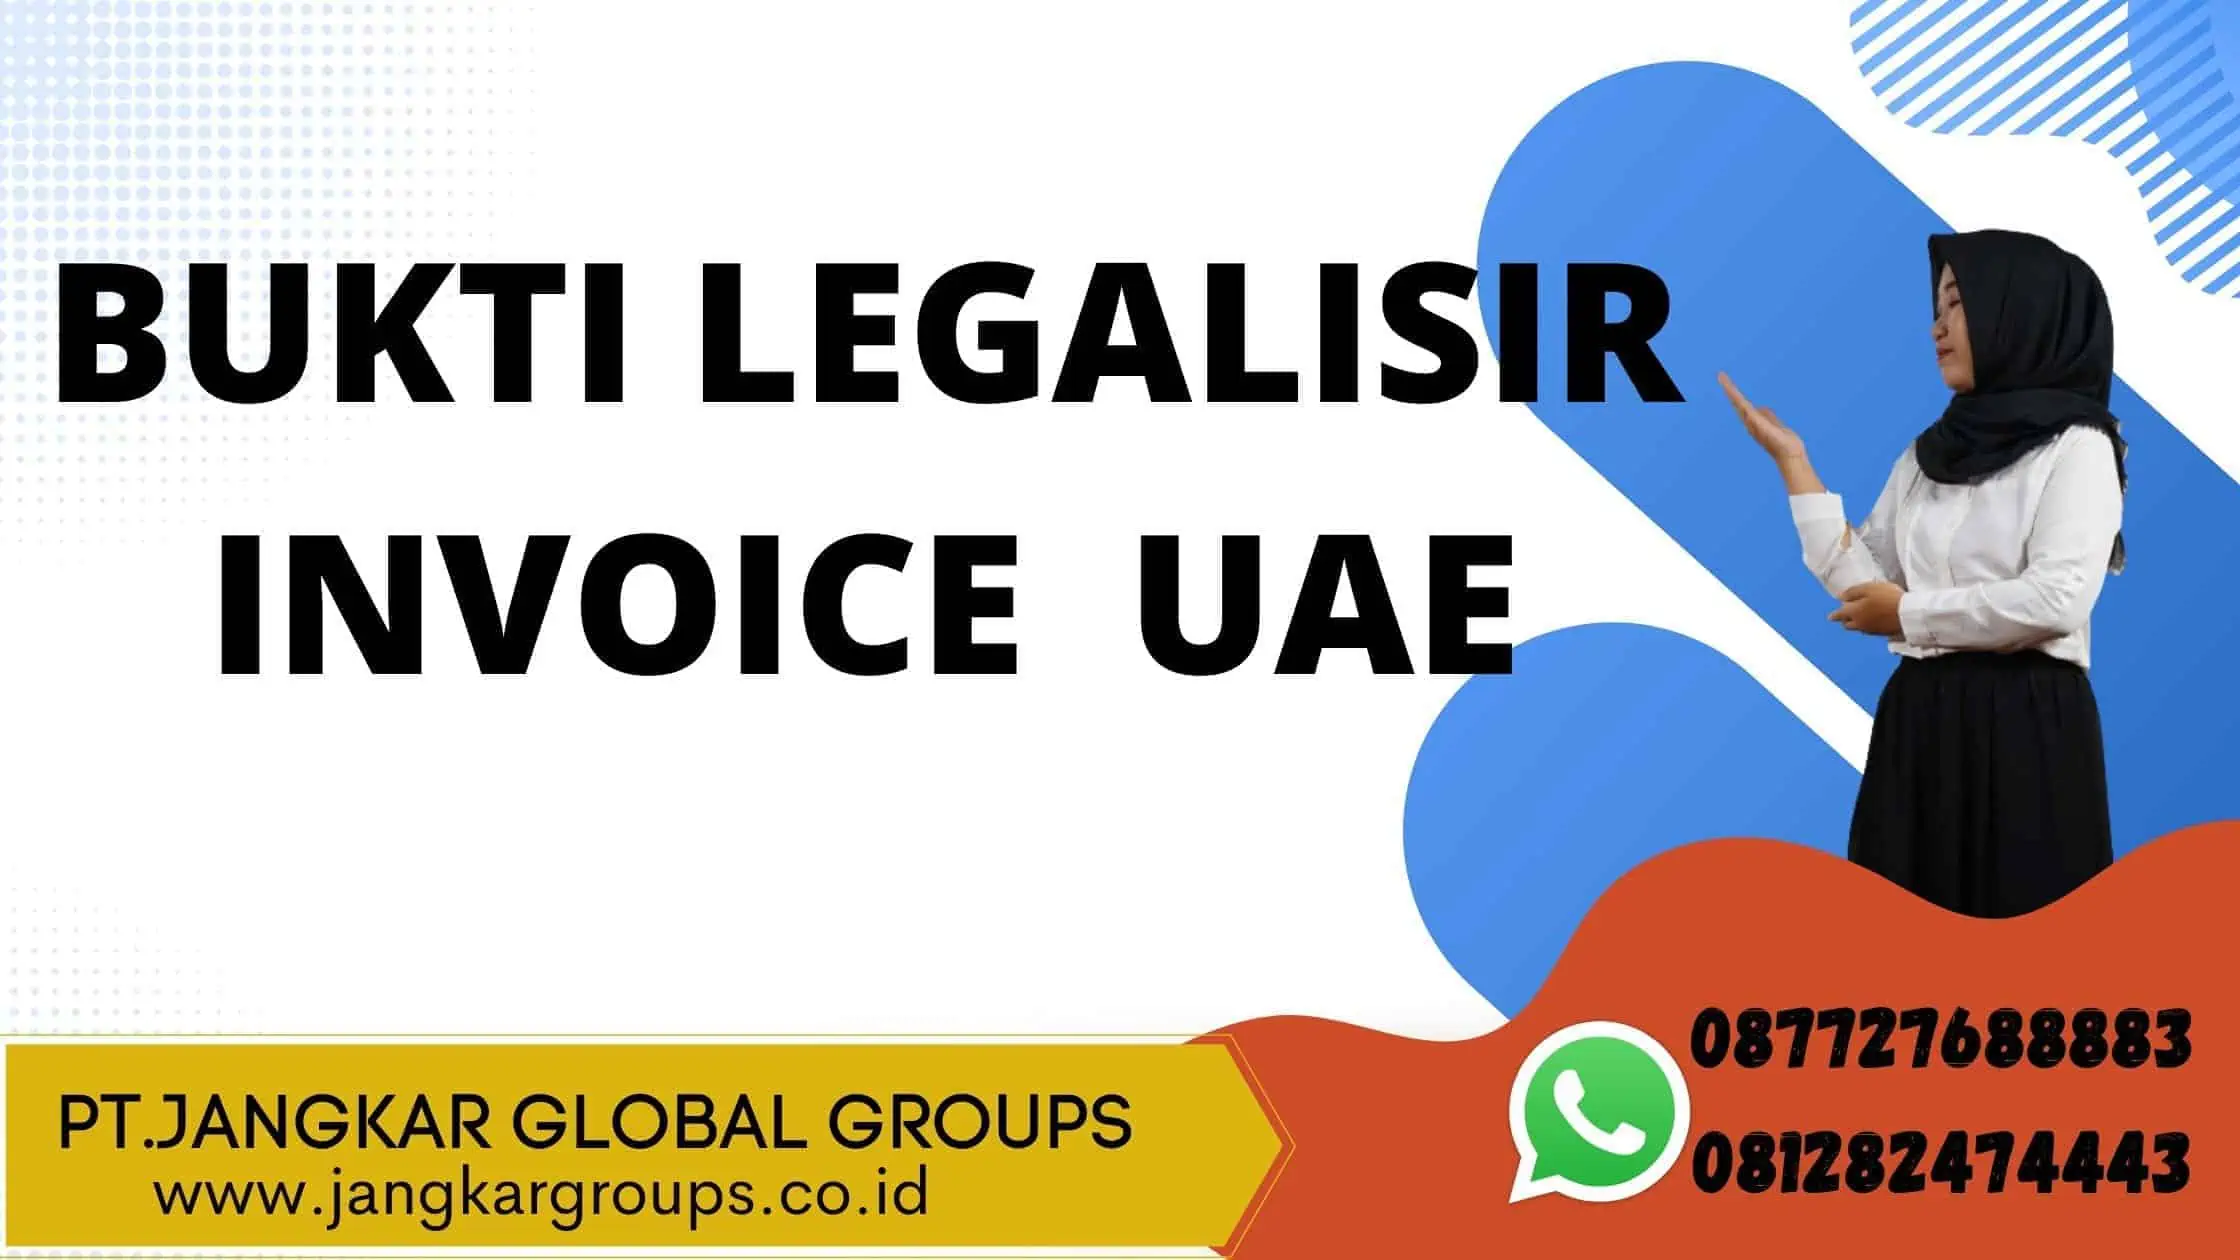 BUKTI LEGALISIR INVOICE UAE